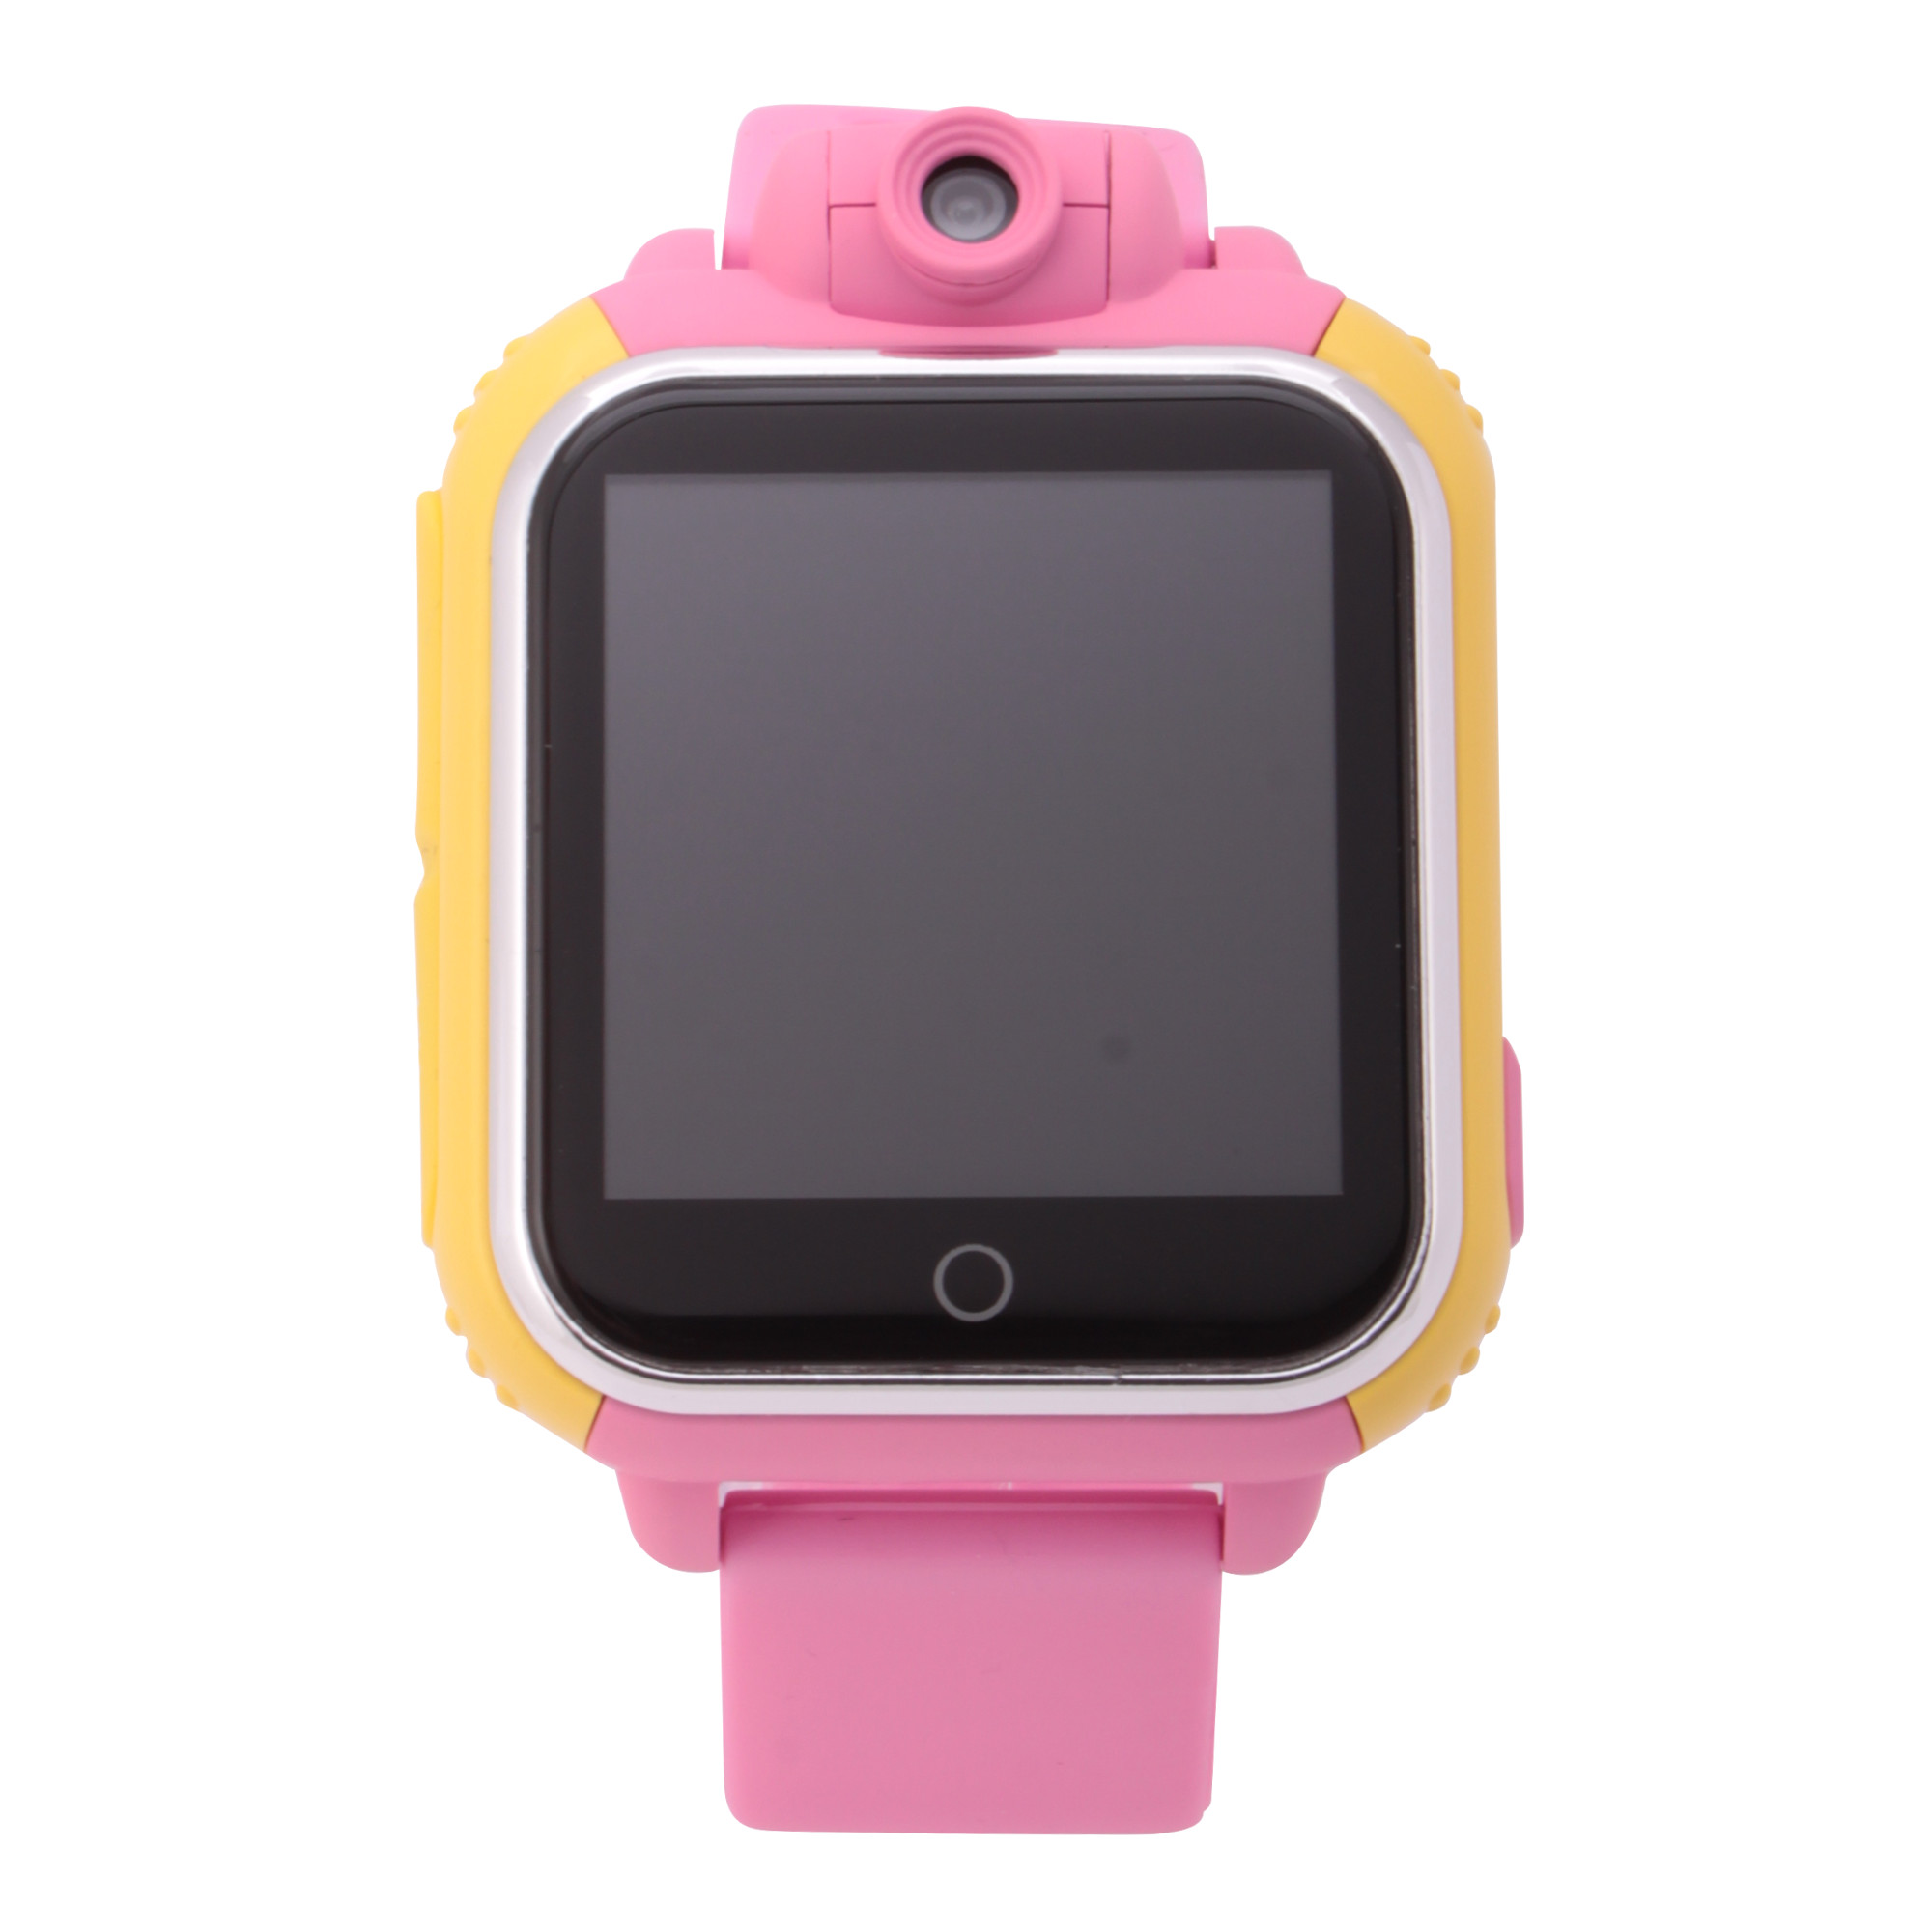 Часы-GPS Smart Watch Gw100 с камерой розовые